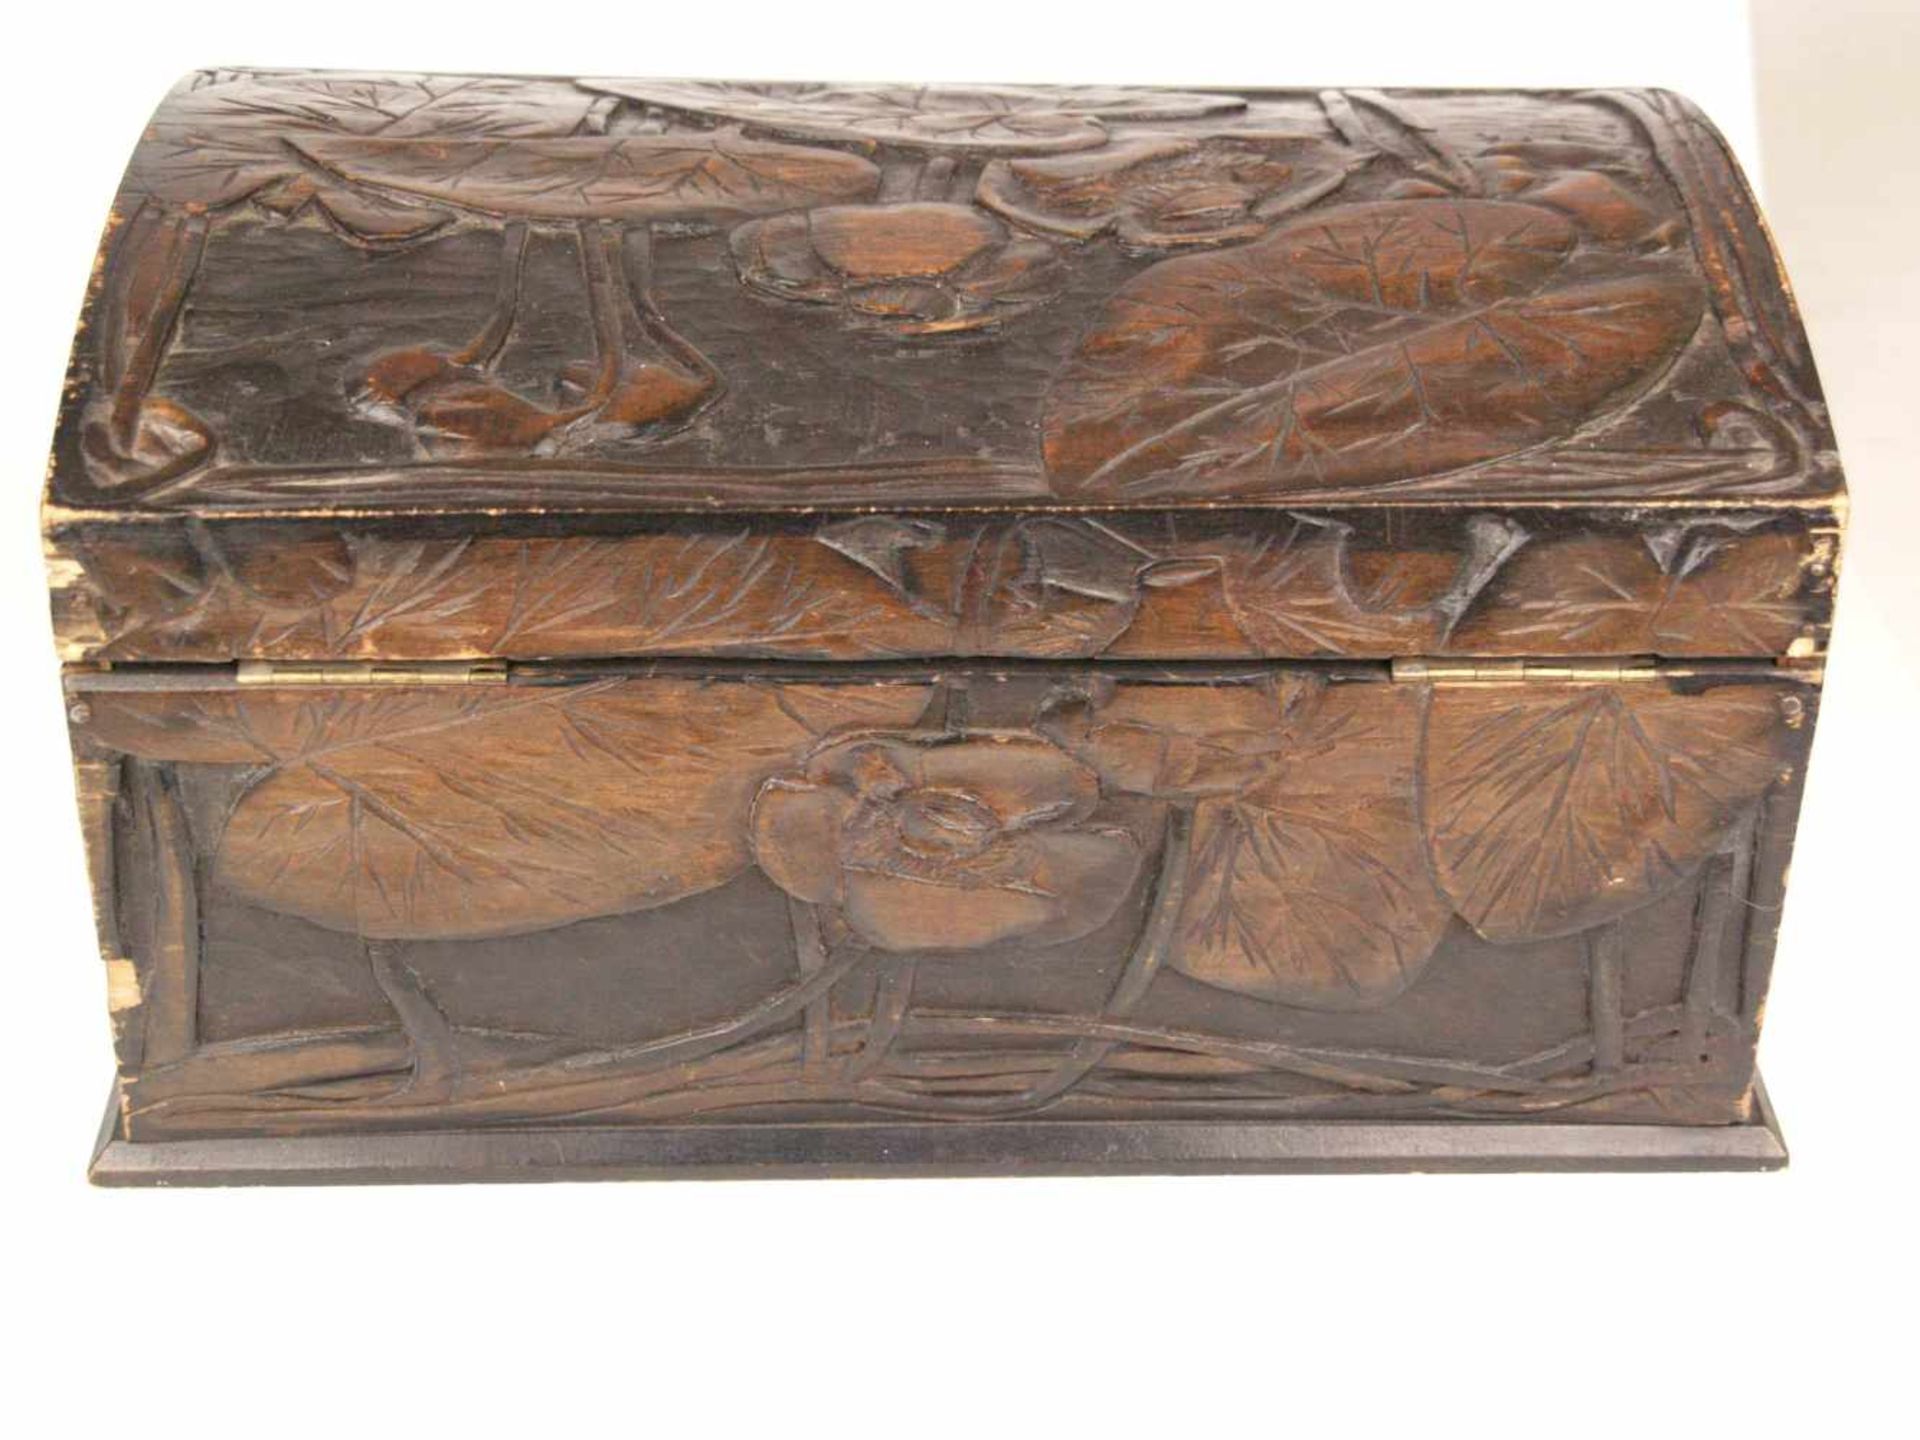 Holzkasten - rechteckiger Korpus, außen braun bemalt, geschnitzter Lotosblumen Dekor, - Bild 8 aus 10